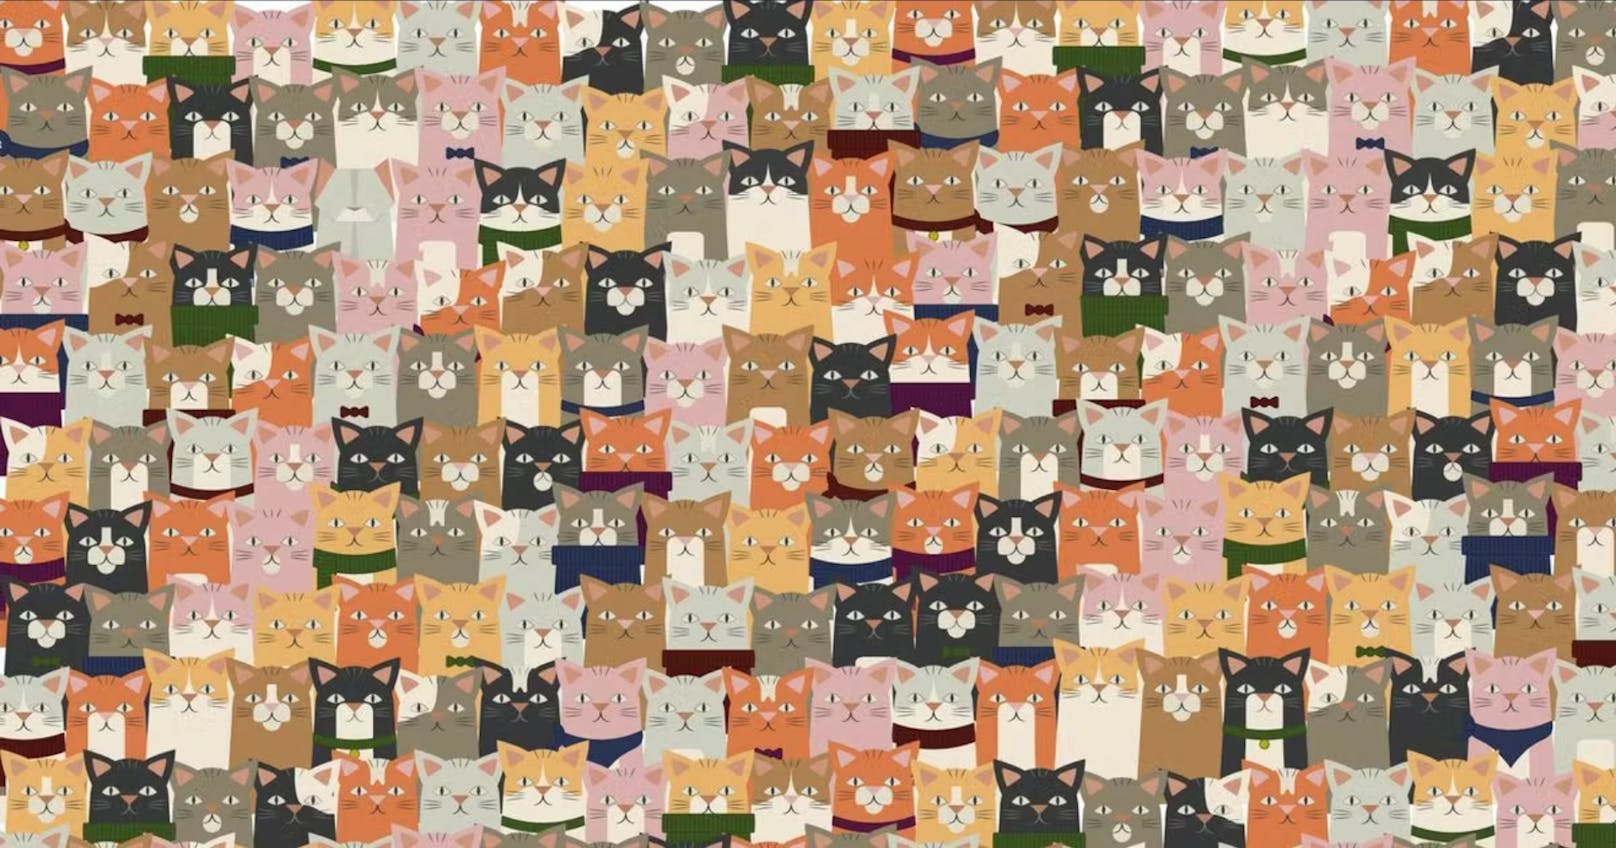 Zehn-Sekunden-Suchbild – findest du die "andere" Katze?